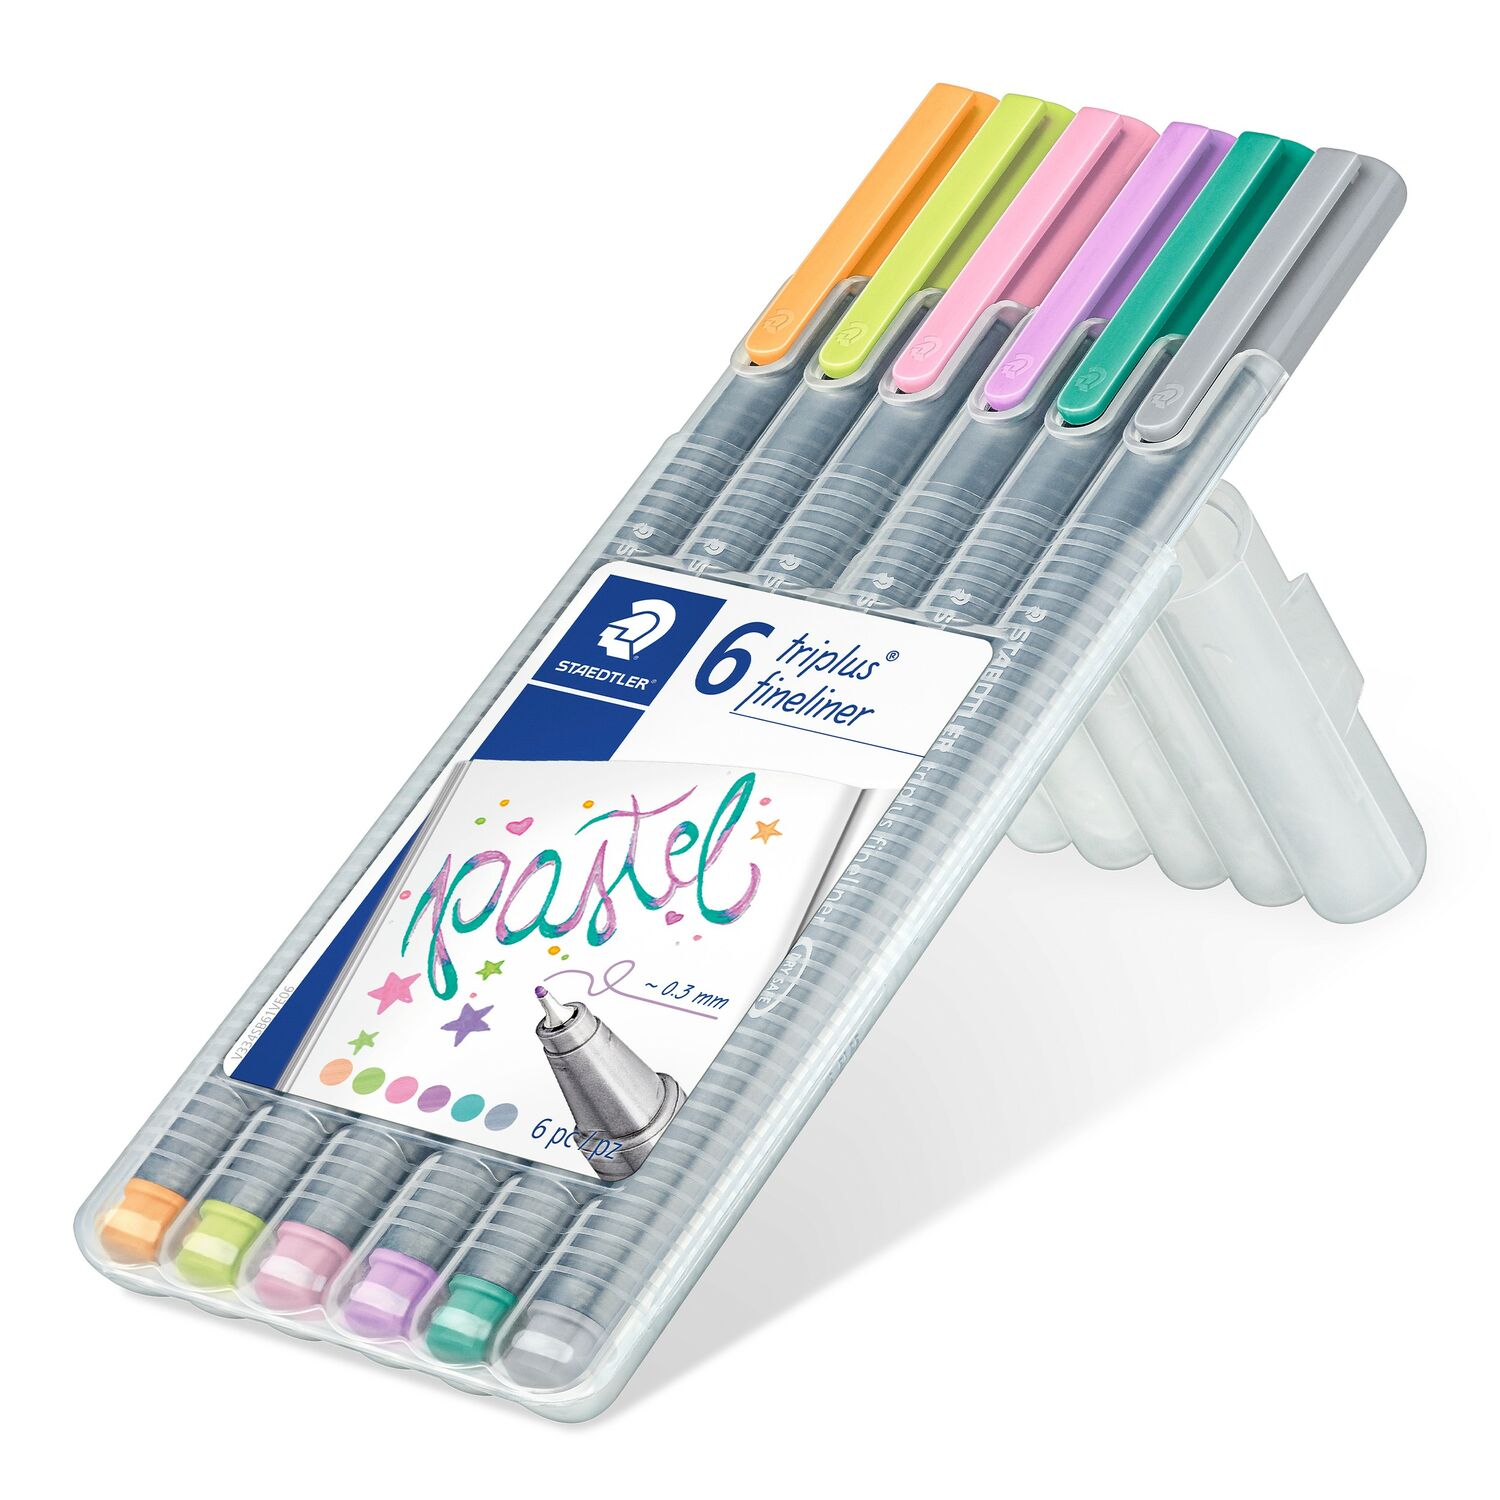 STAEDTLER box contiene 6 colores pastel surtidos